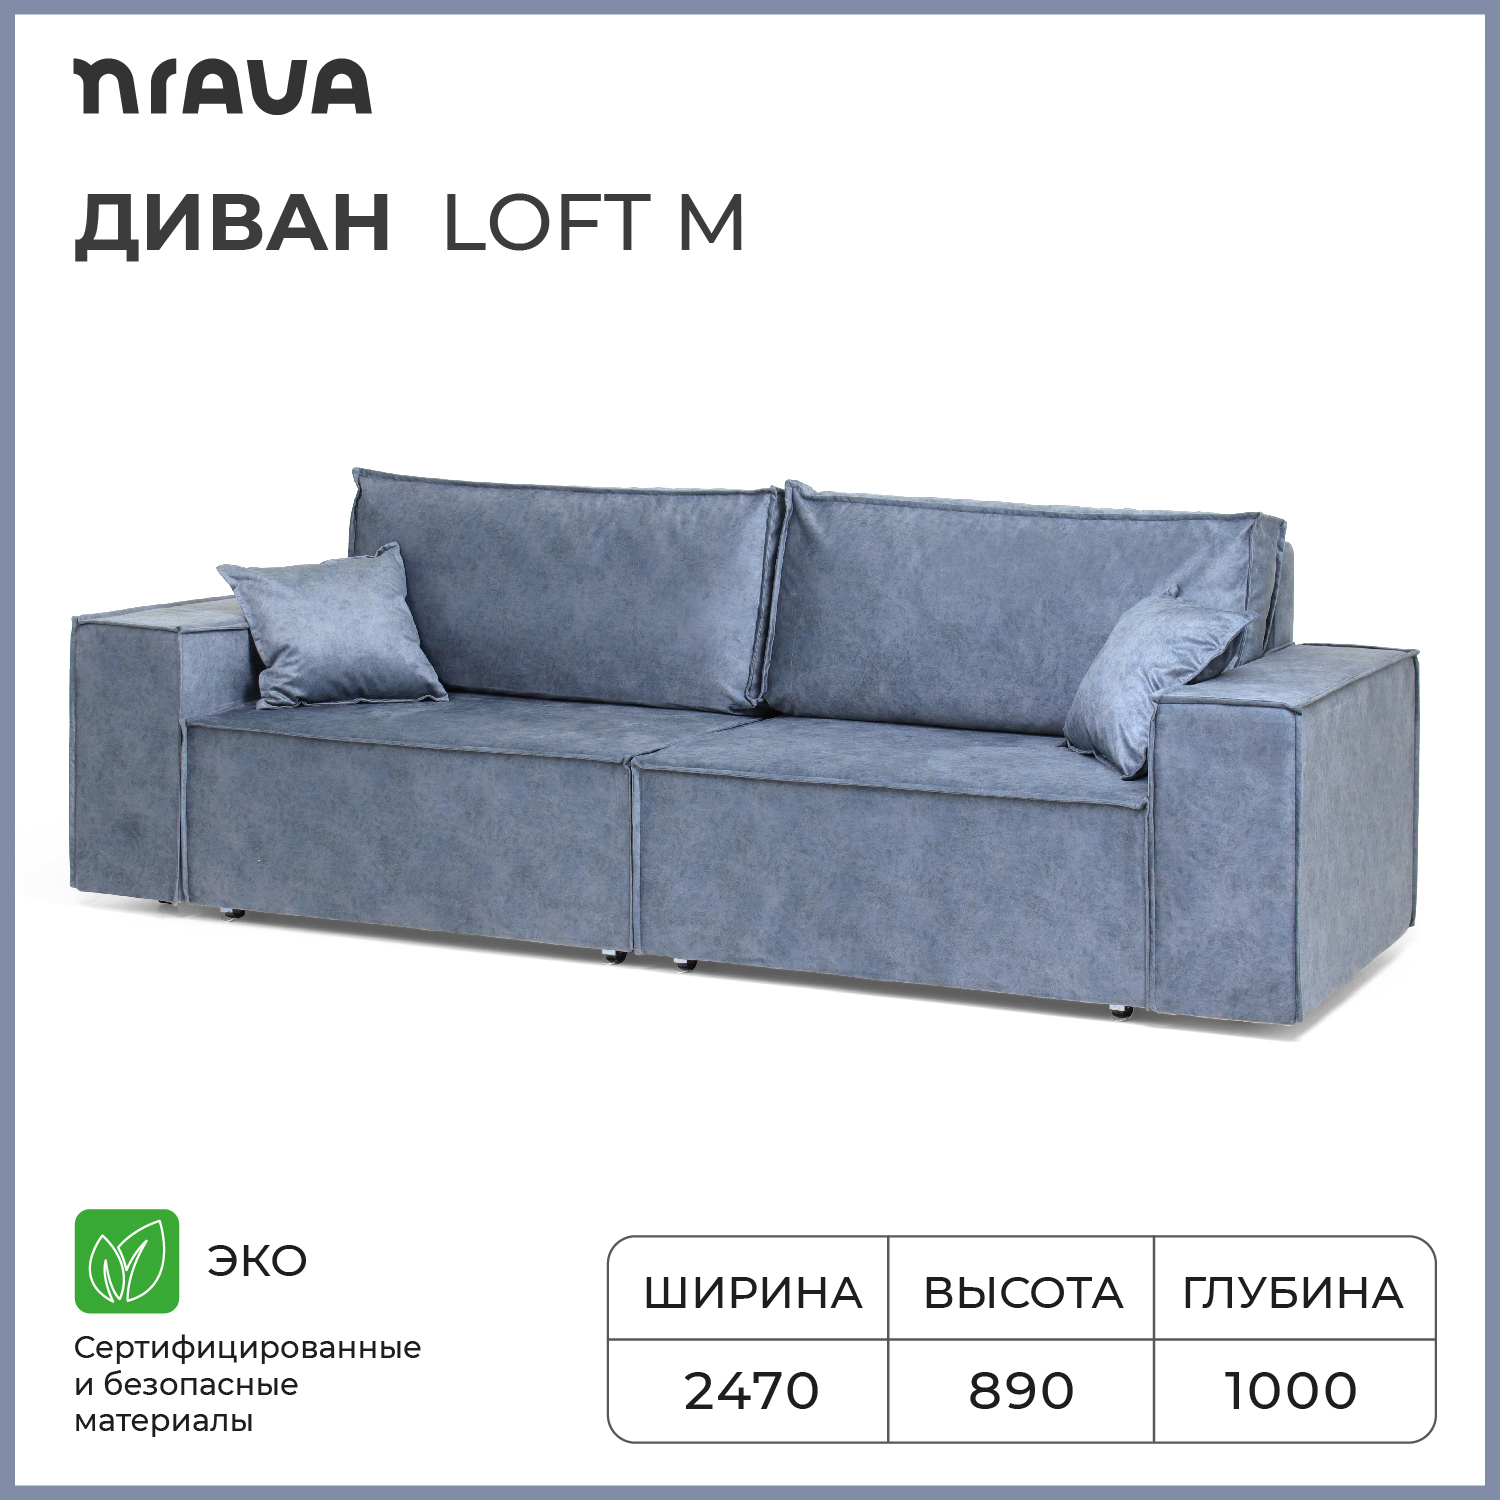 Диван-кровать NRAVA Loft M 2470х1000х890